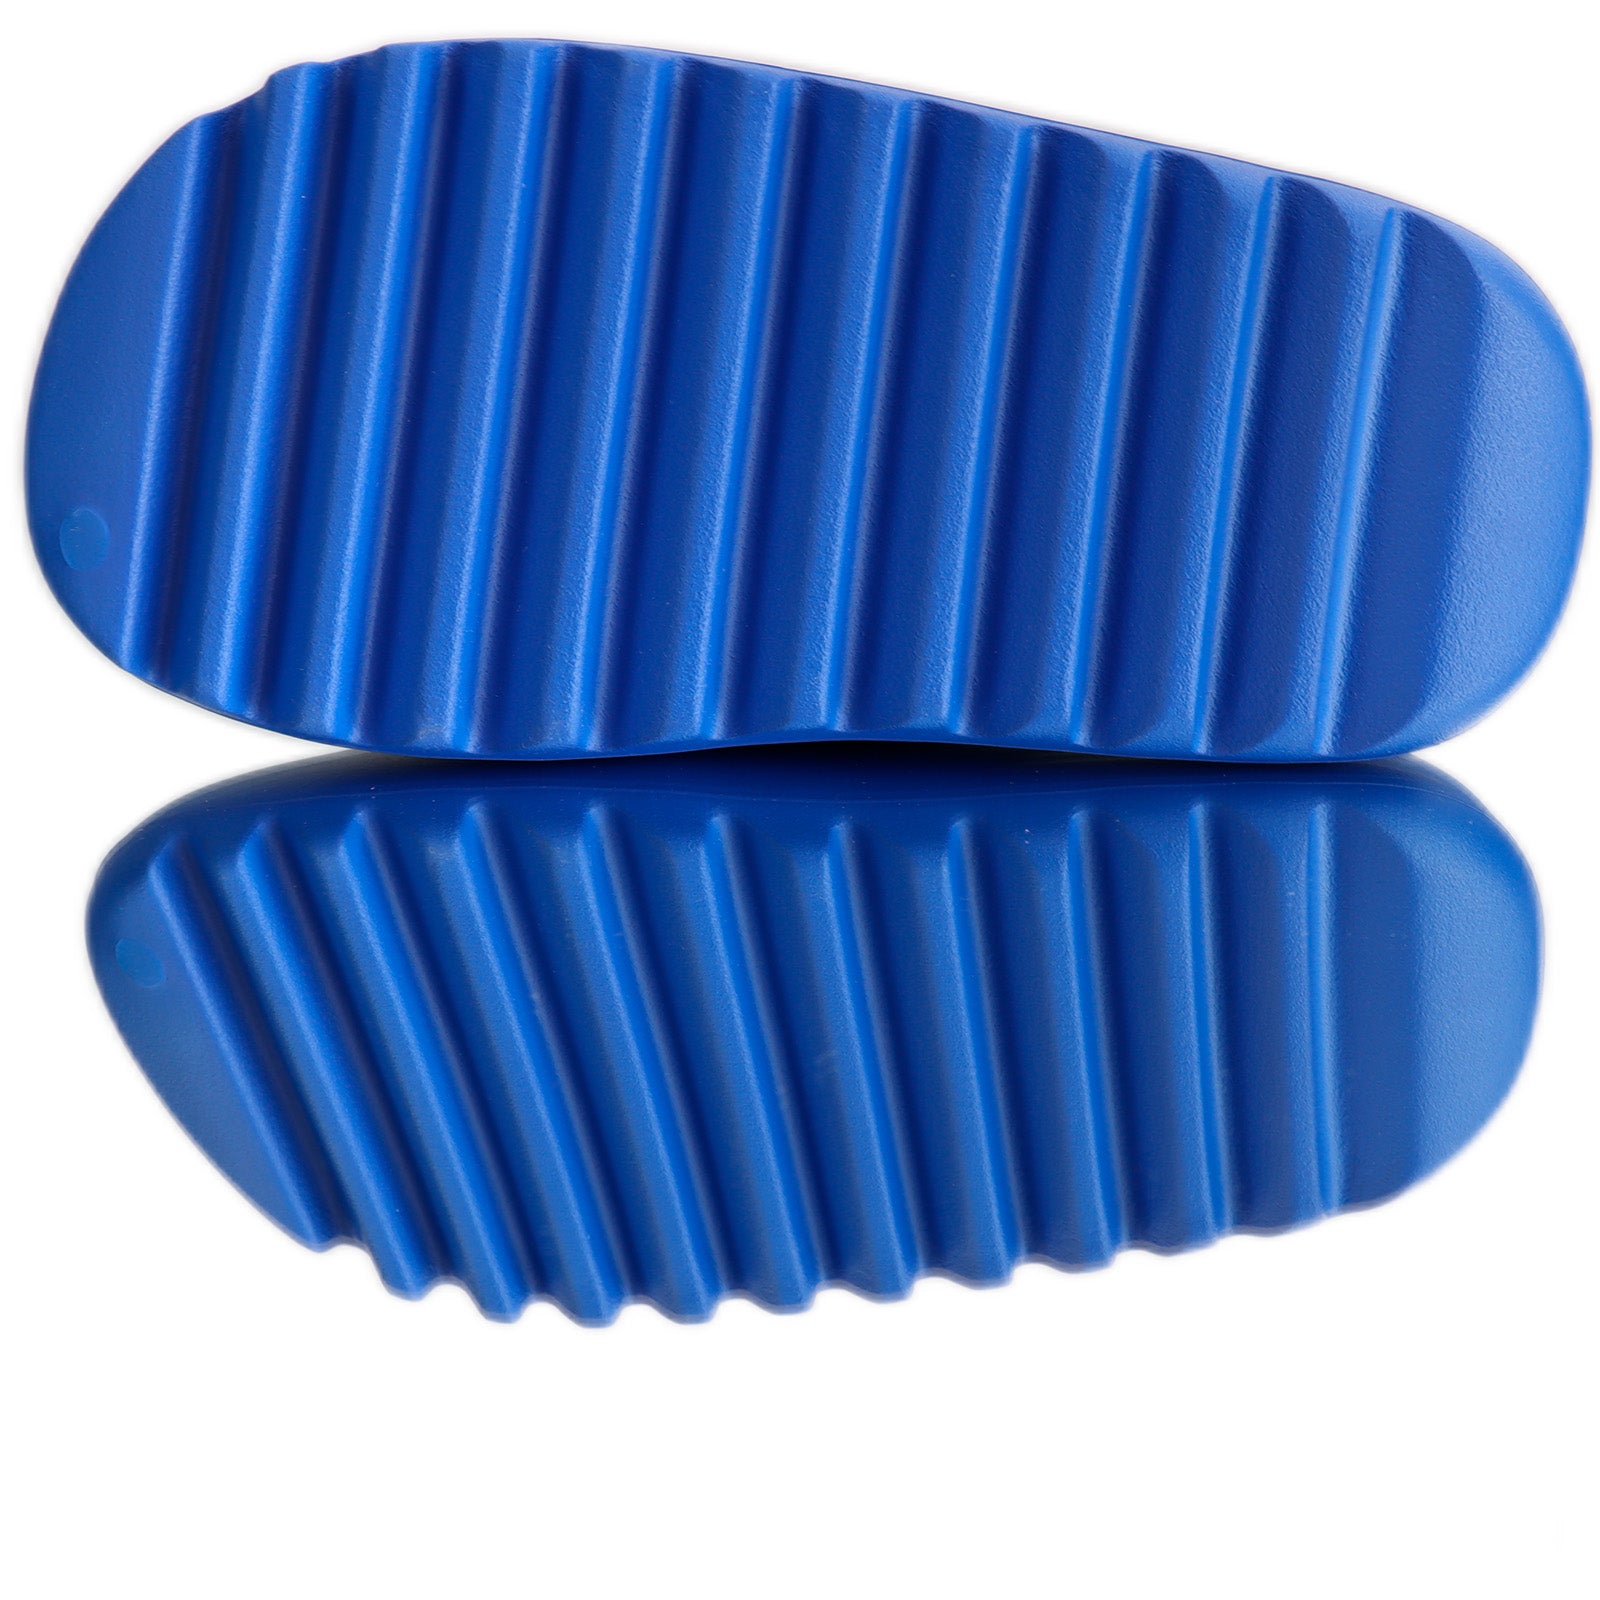 Yeezy Slides Azure  Adidas   